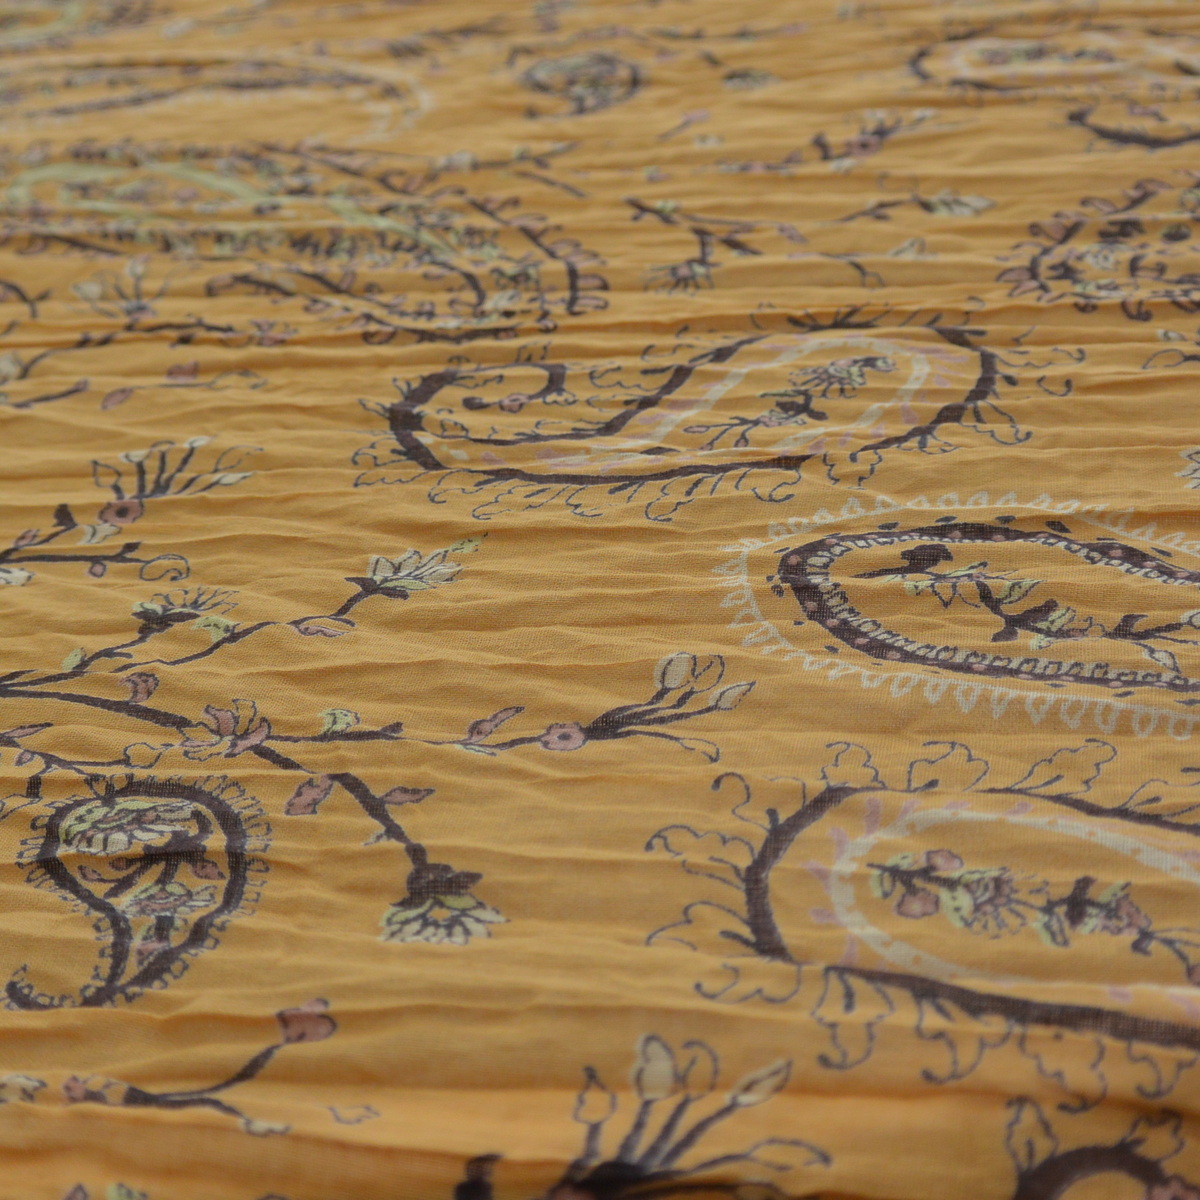 foulard zen ethic grande-etole-raj-voile-de-coton-110x180cm une idee cadeau chez ugo et lea   (6)